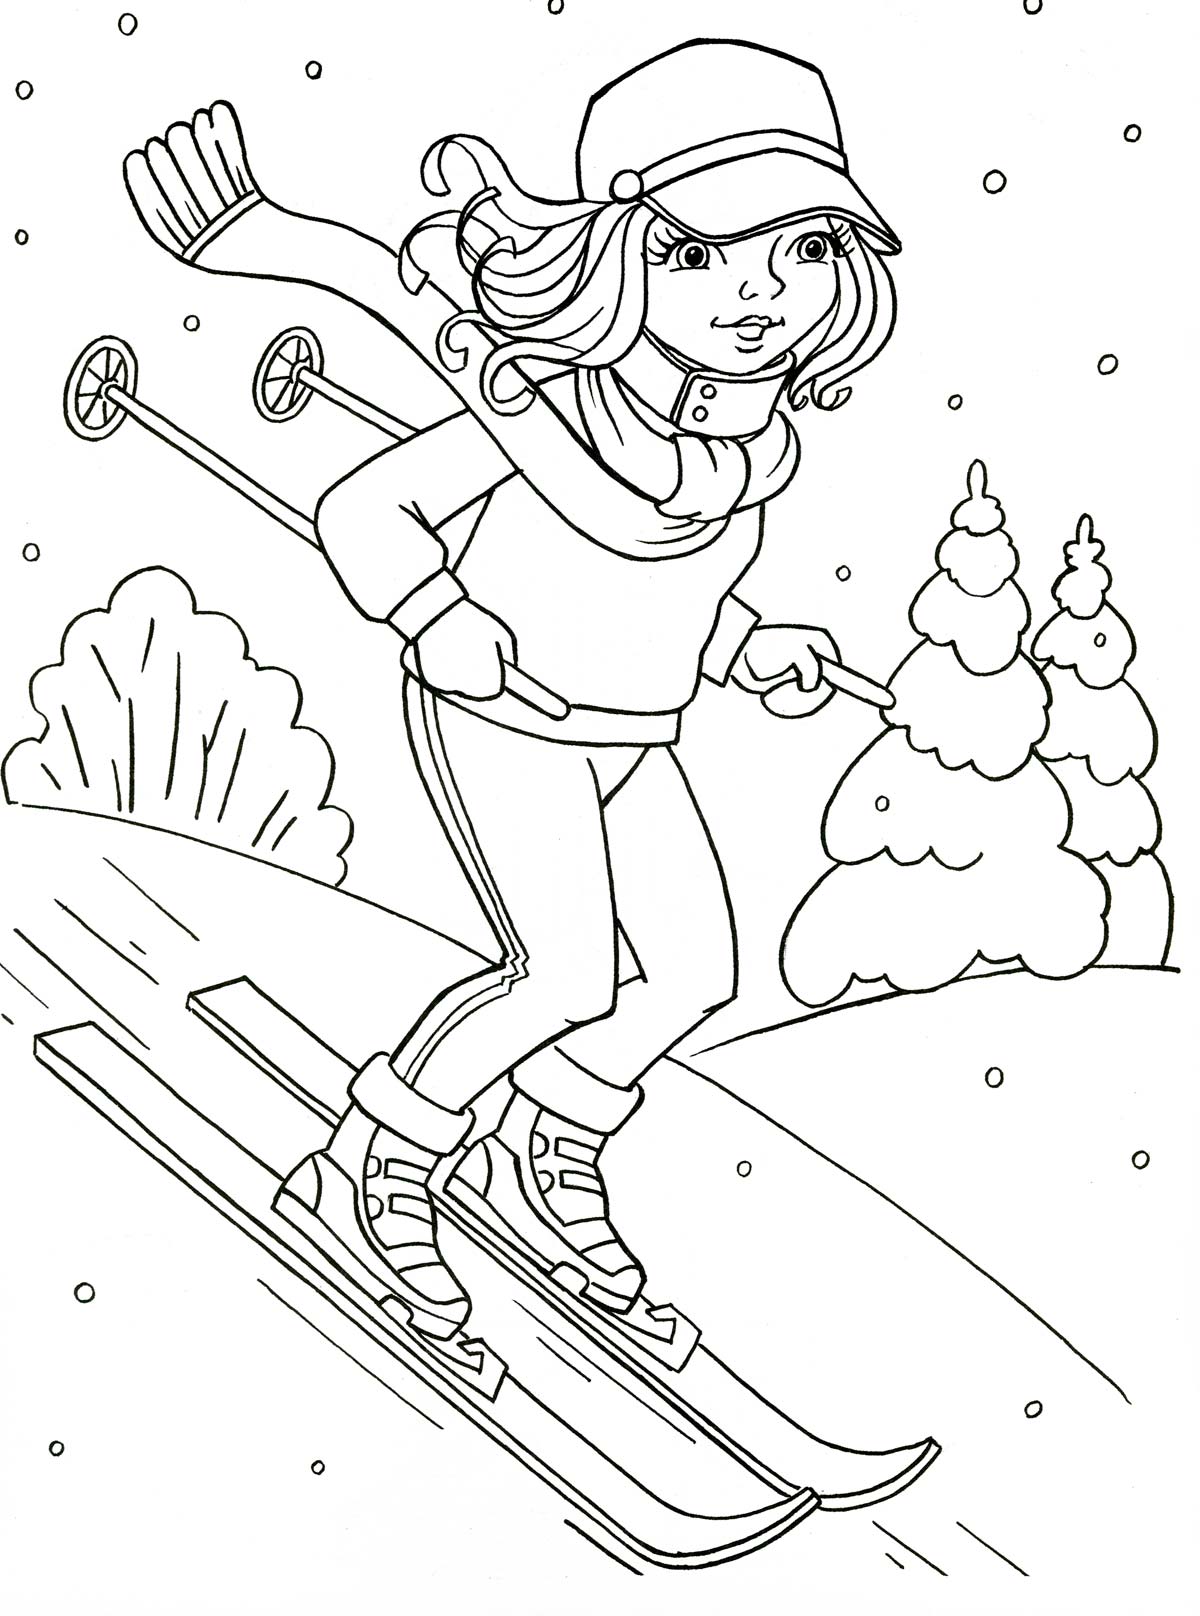 Girl on skis